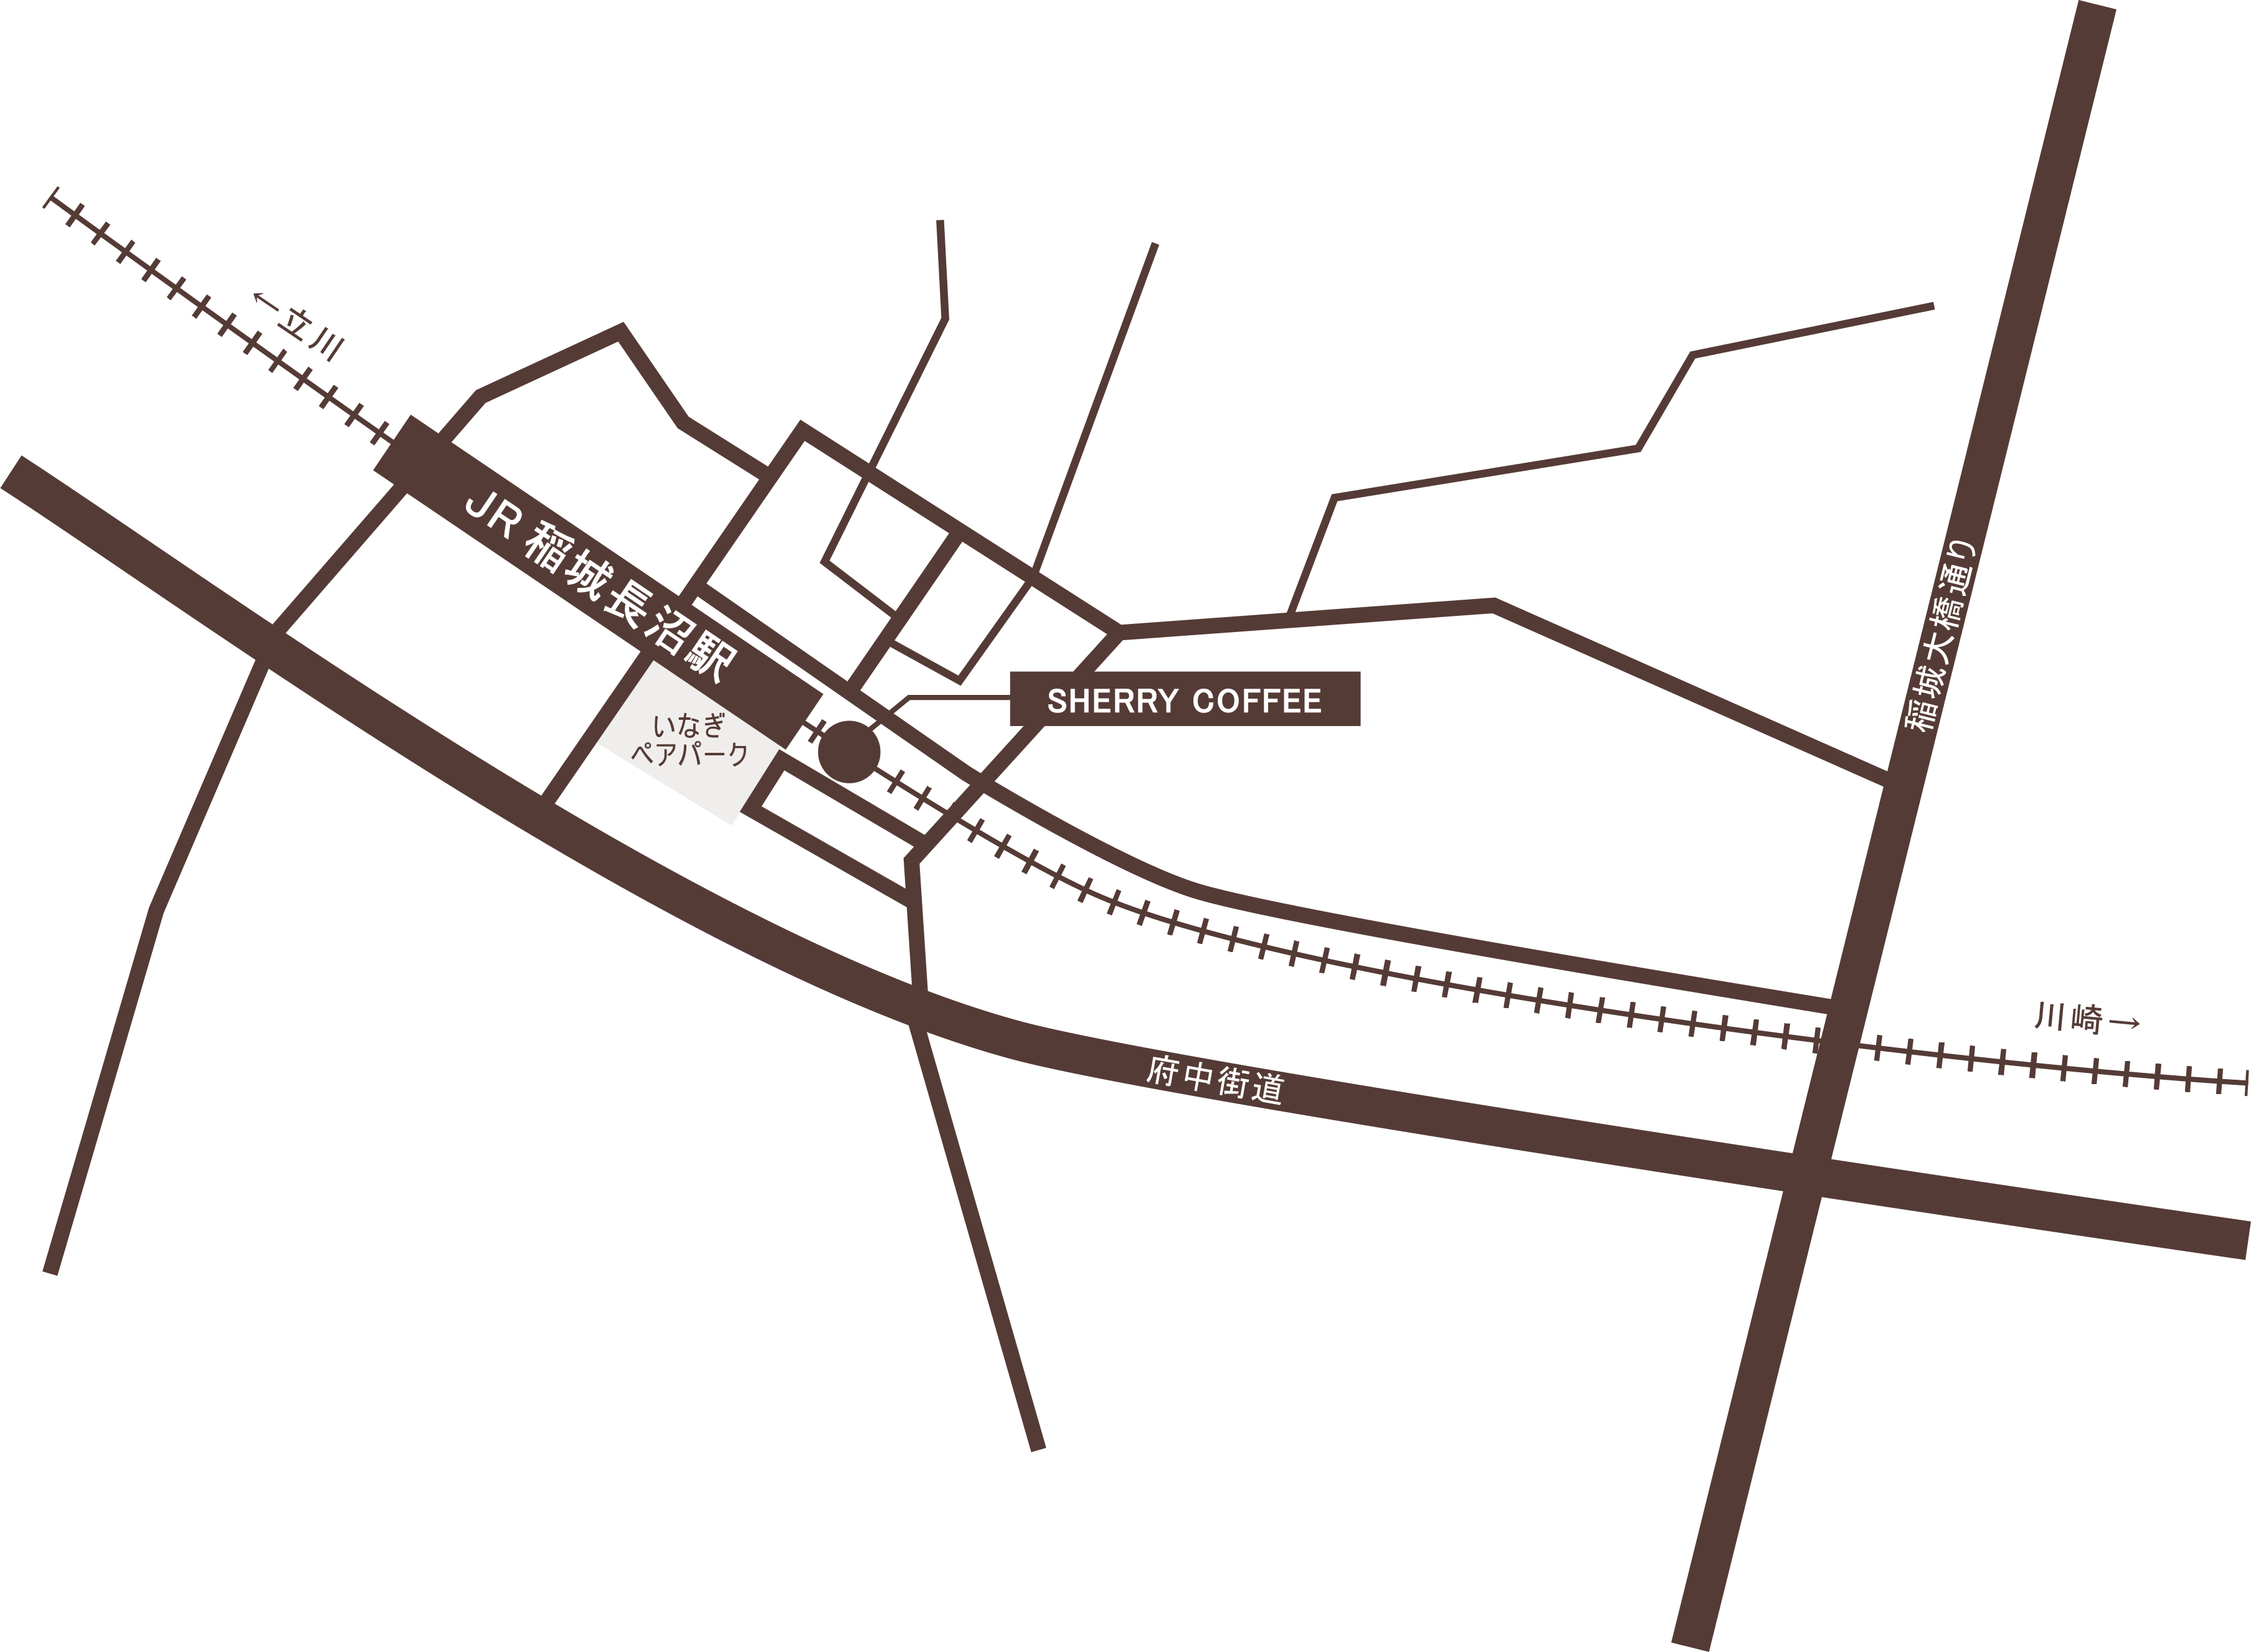 コーヒースタンド稲城長沼駅のイラストマップ